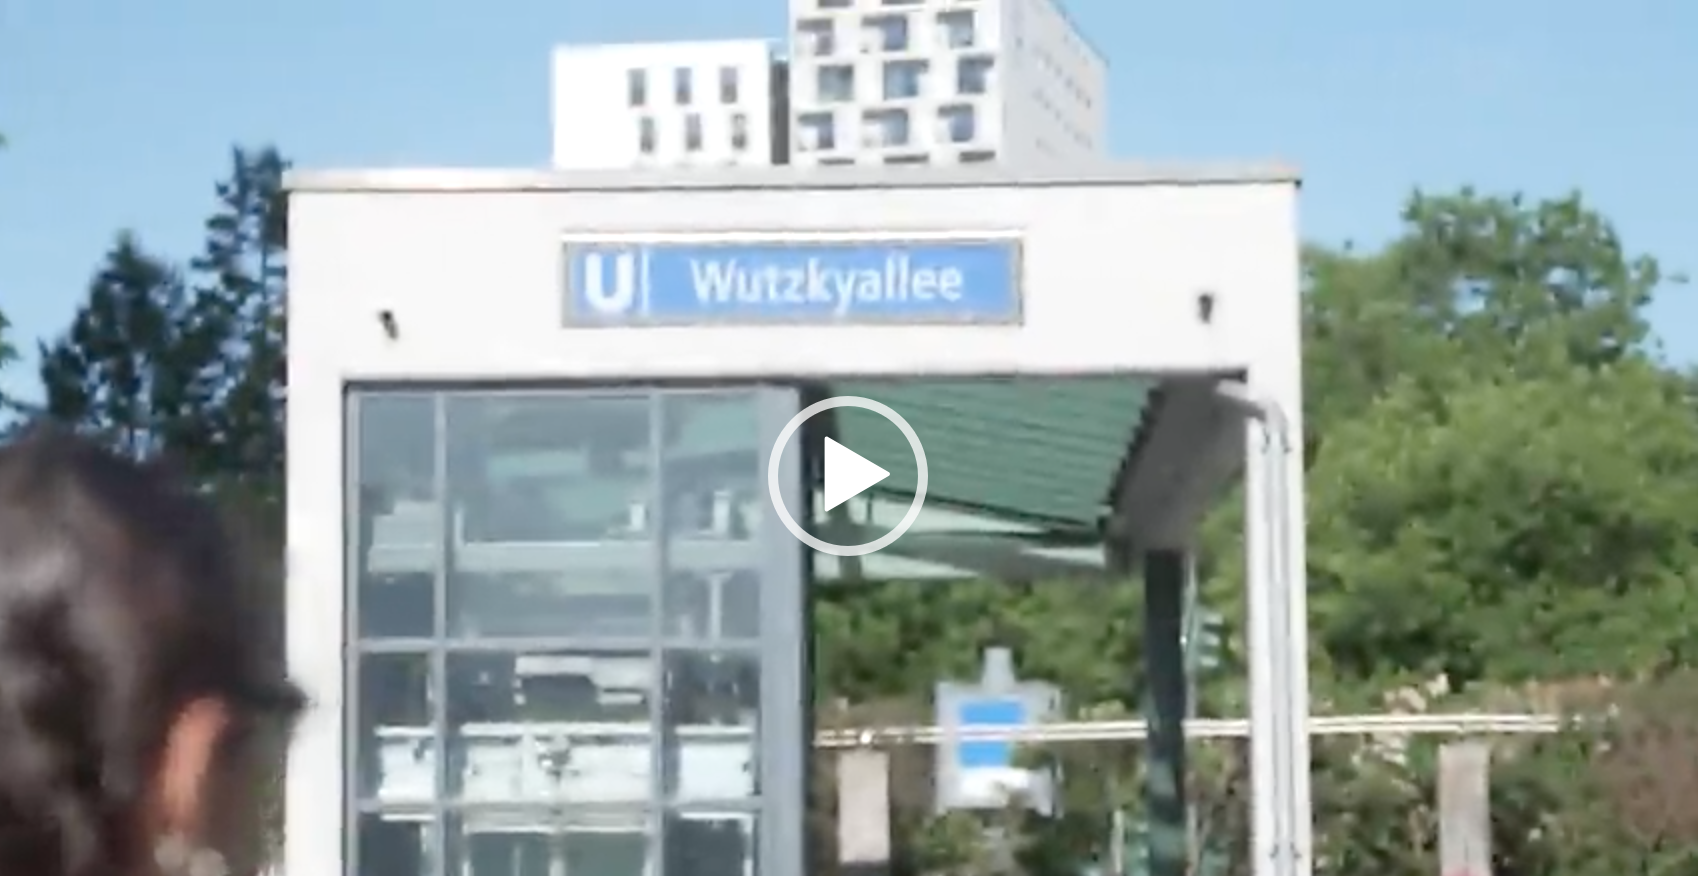 Wutzkyallee